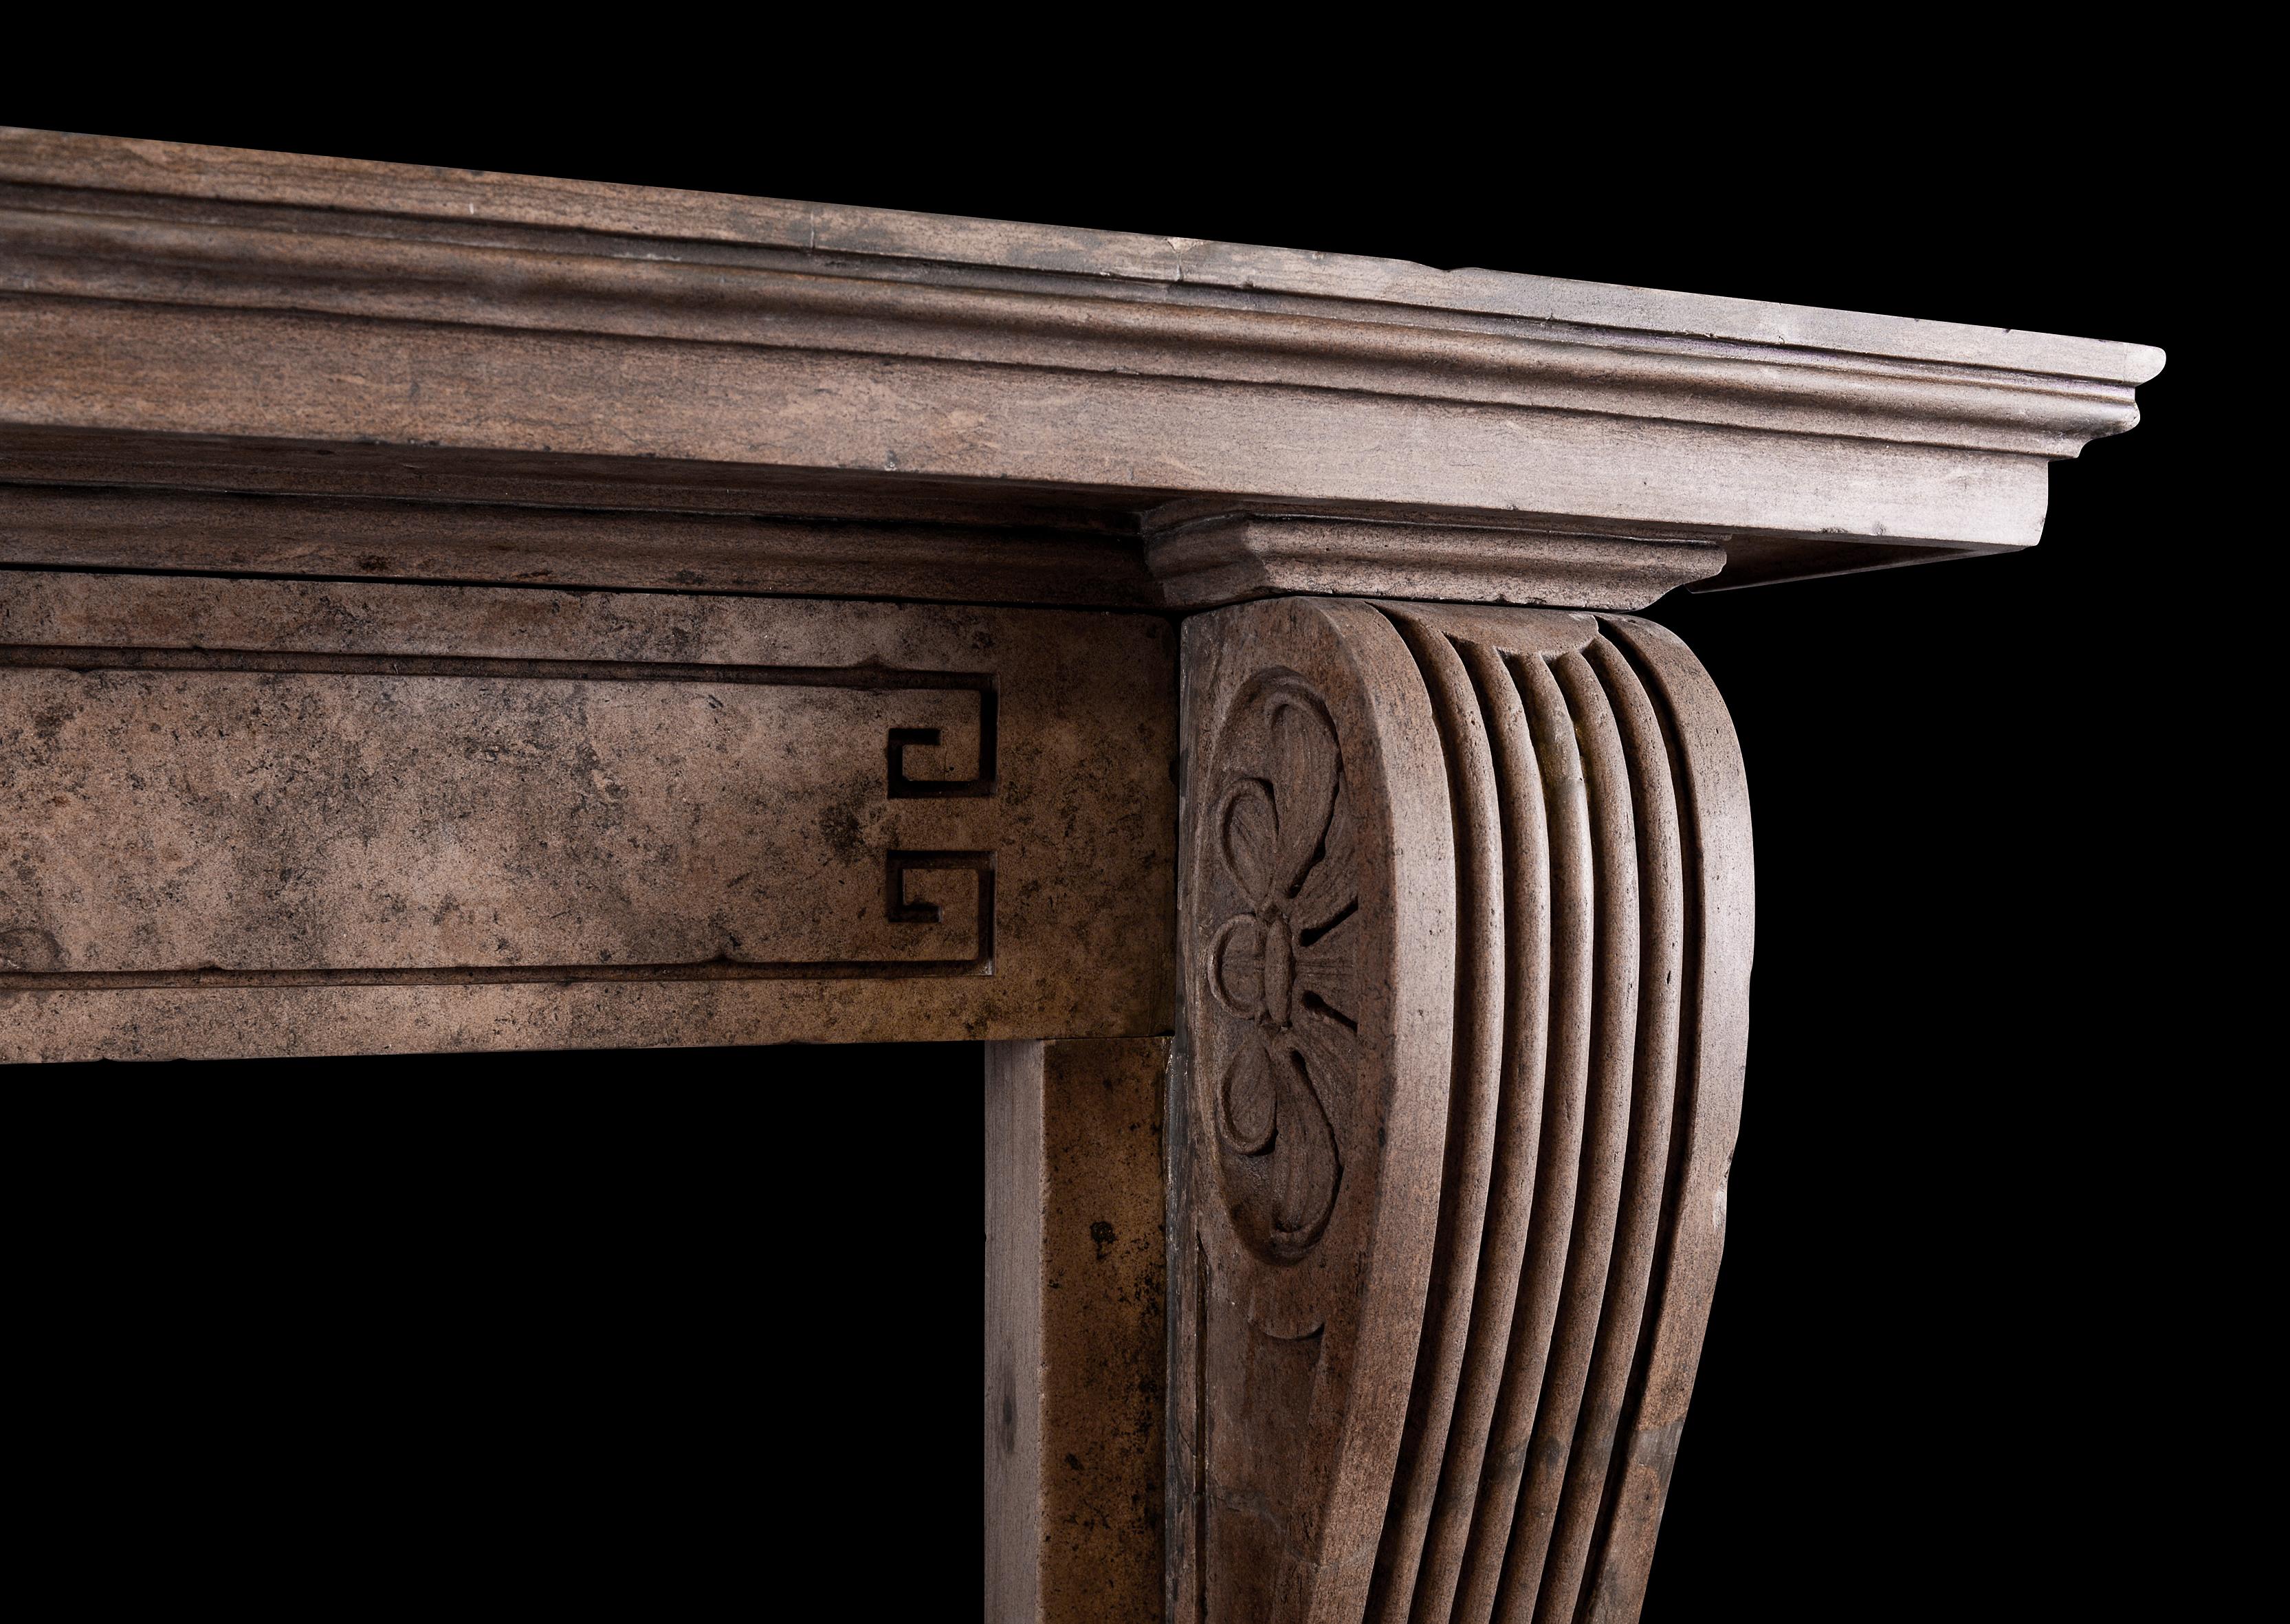 Une grande et impressionnante cheminée d'époque en pierre de style Régence. Les jambages profilés et cannelés sont surmontés de consoles sculptées et de rondeaux sur les plinthes. La frise à motif de clé grecque, surmontée d'une tablette moulurée.